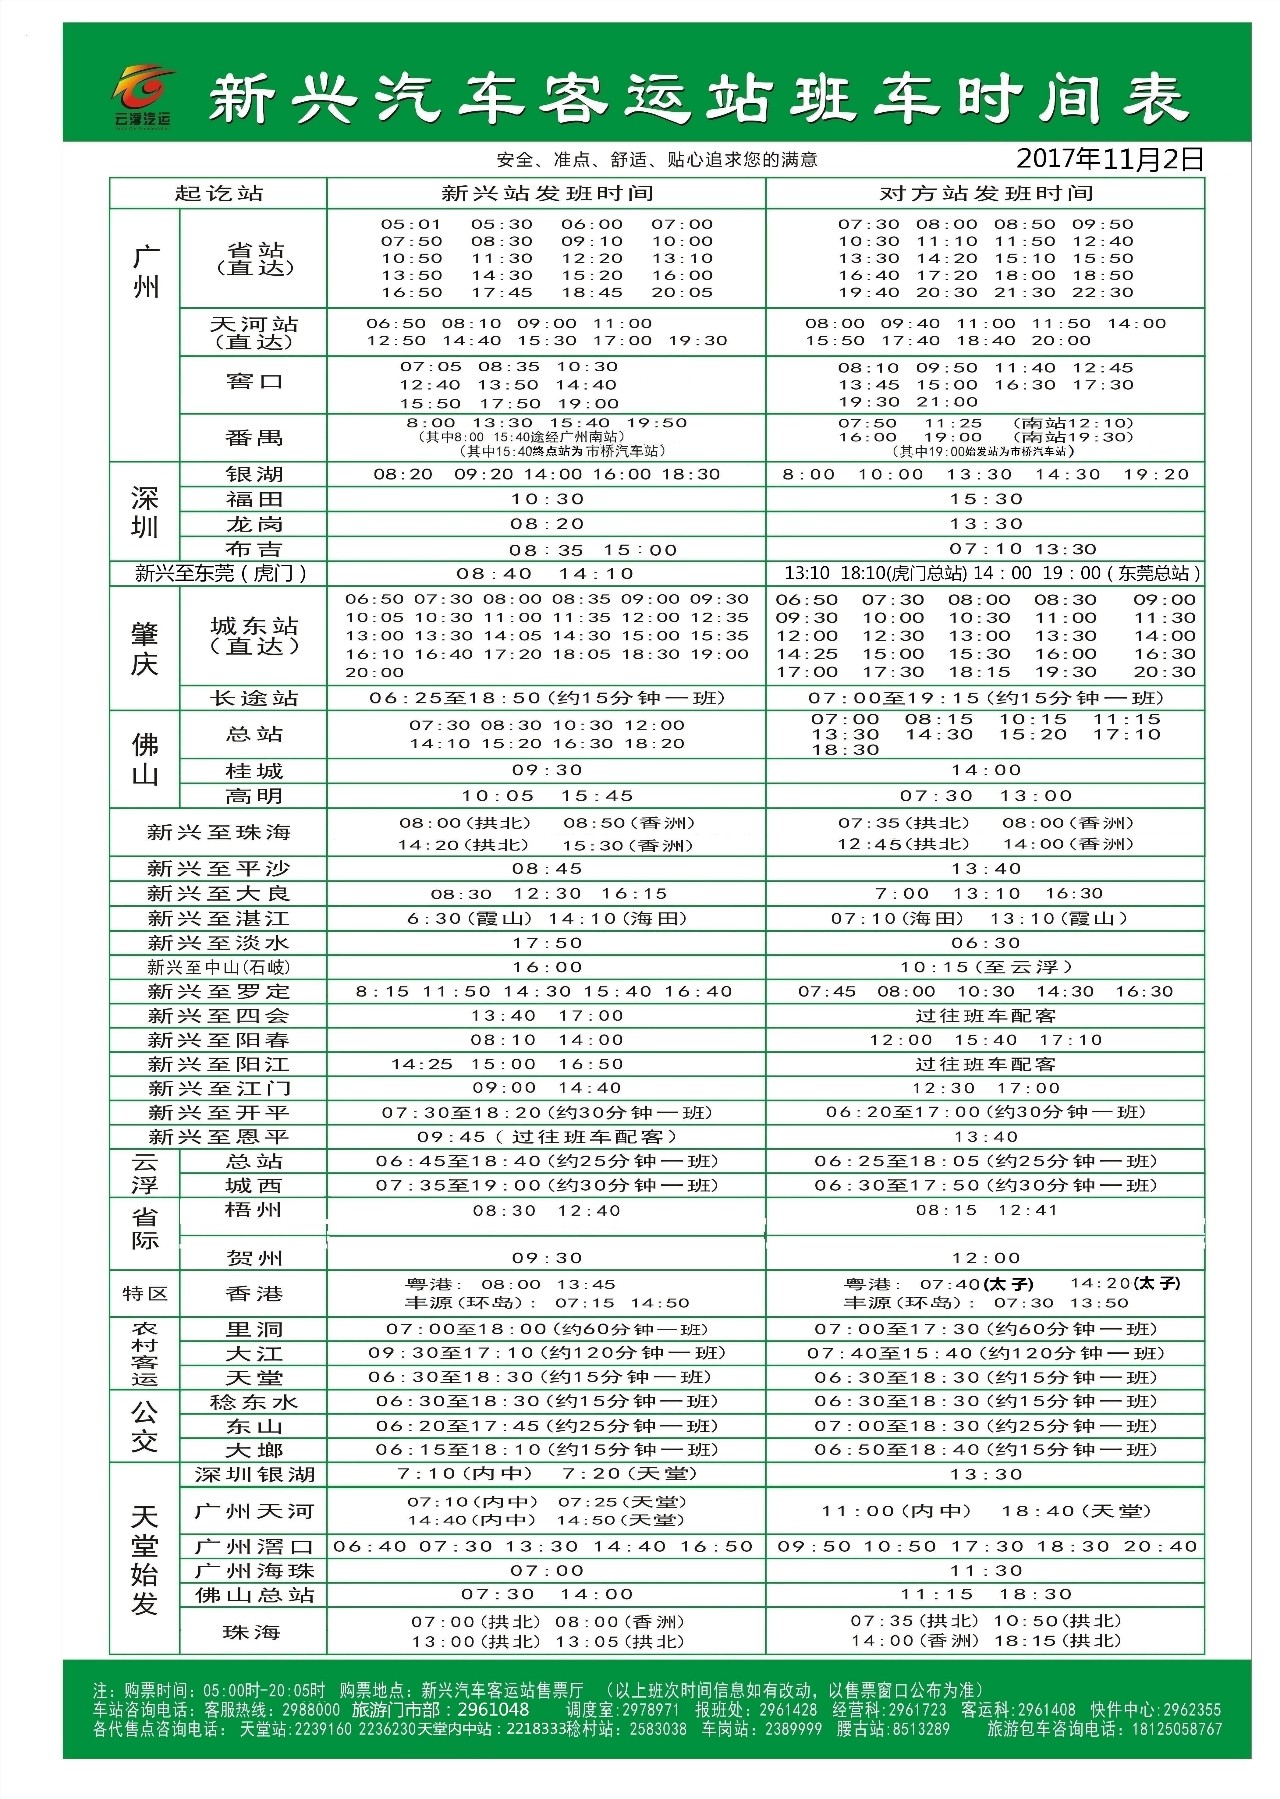 最新！2021年上海地铁列车时刻表！快收藏!_试运营